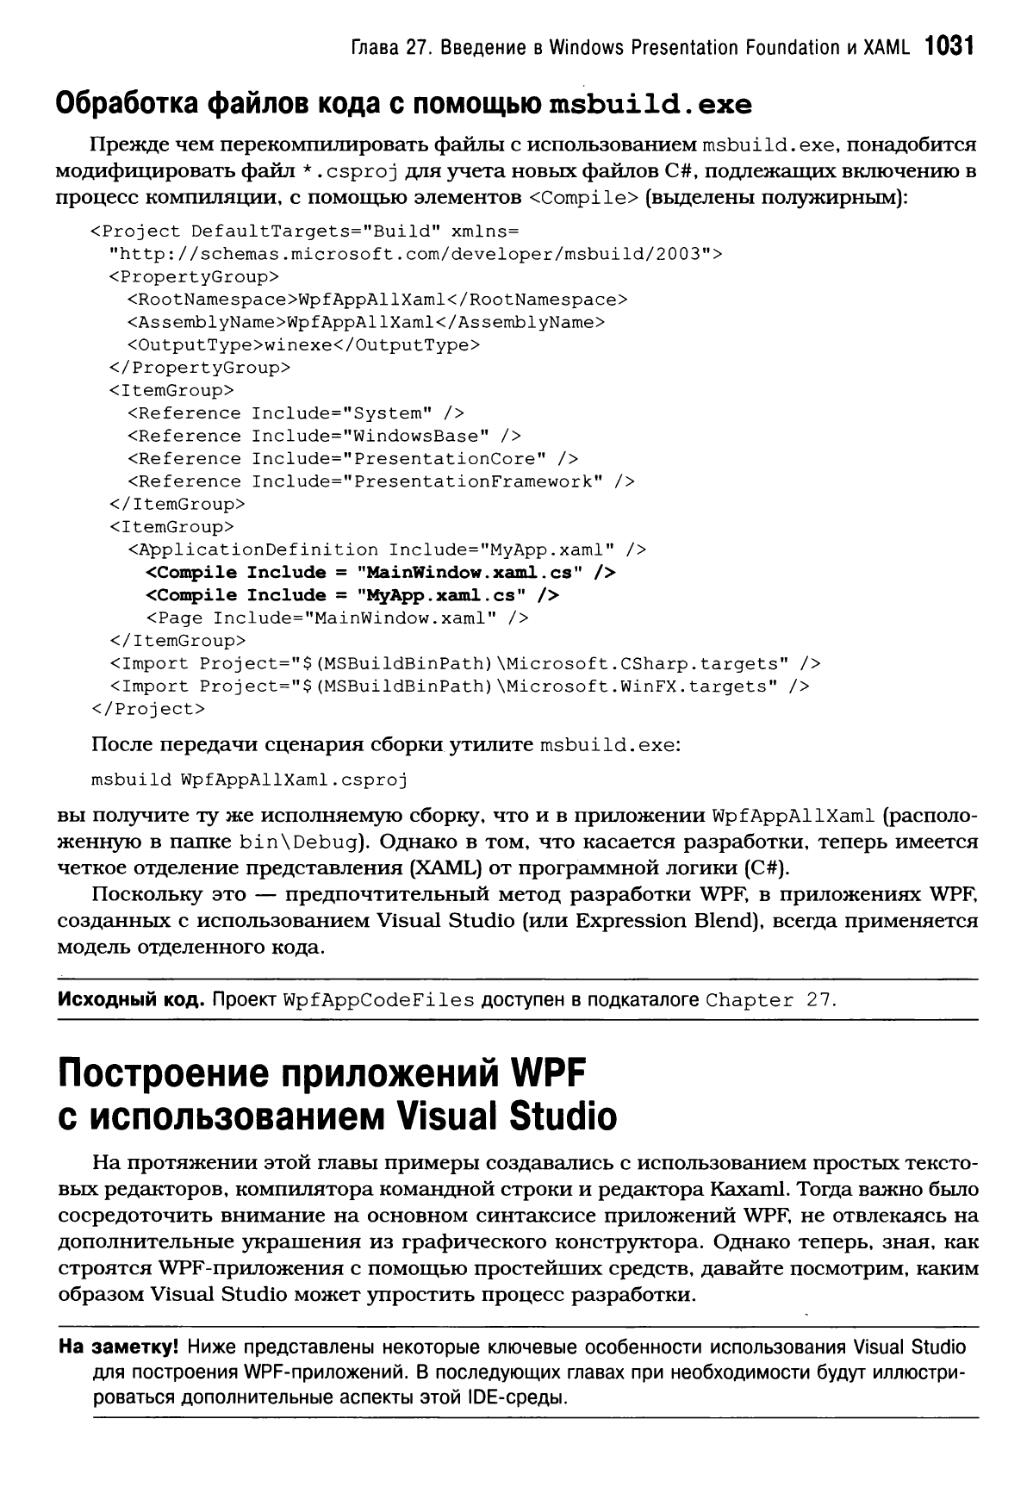 Обработка файлов кода с помощью msbuild.exe
Построение приложений WPF с использованием Visual Studio